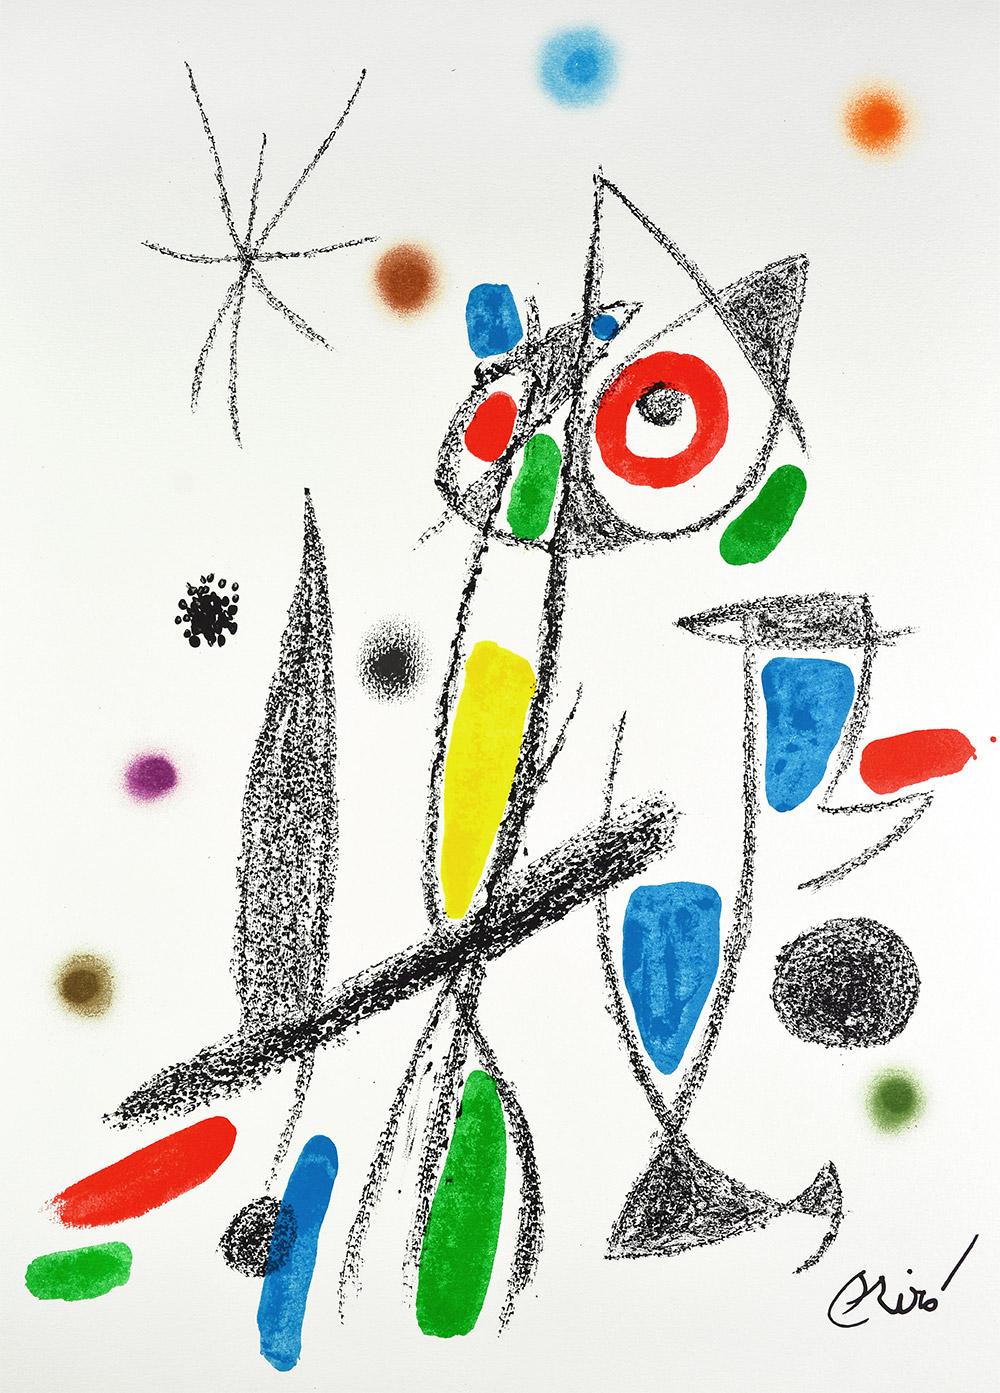 Joan Miró - Maravillas con variaciones acrósticas en el jardín de Miró XII
Date de création : 1975
Support : Lithographie sur papier Gvarro
Édition : 1500
Taille : 49,5 x 35,5 cm
Observations :
Lithographie sur plaque de papier Gvarro signée. Édité